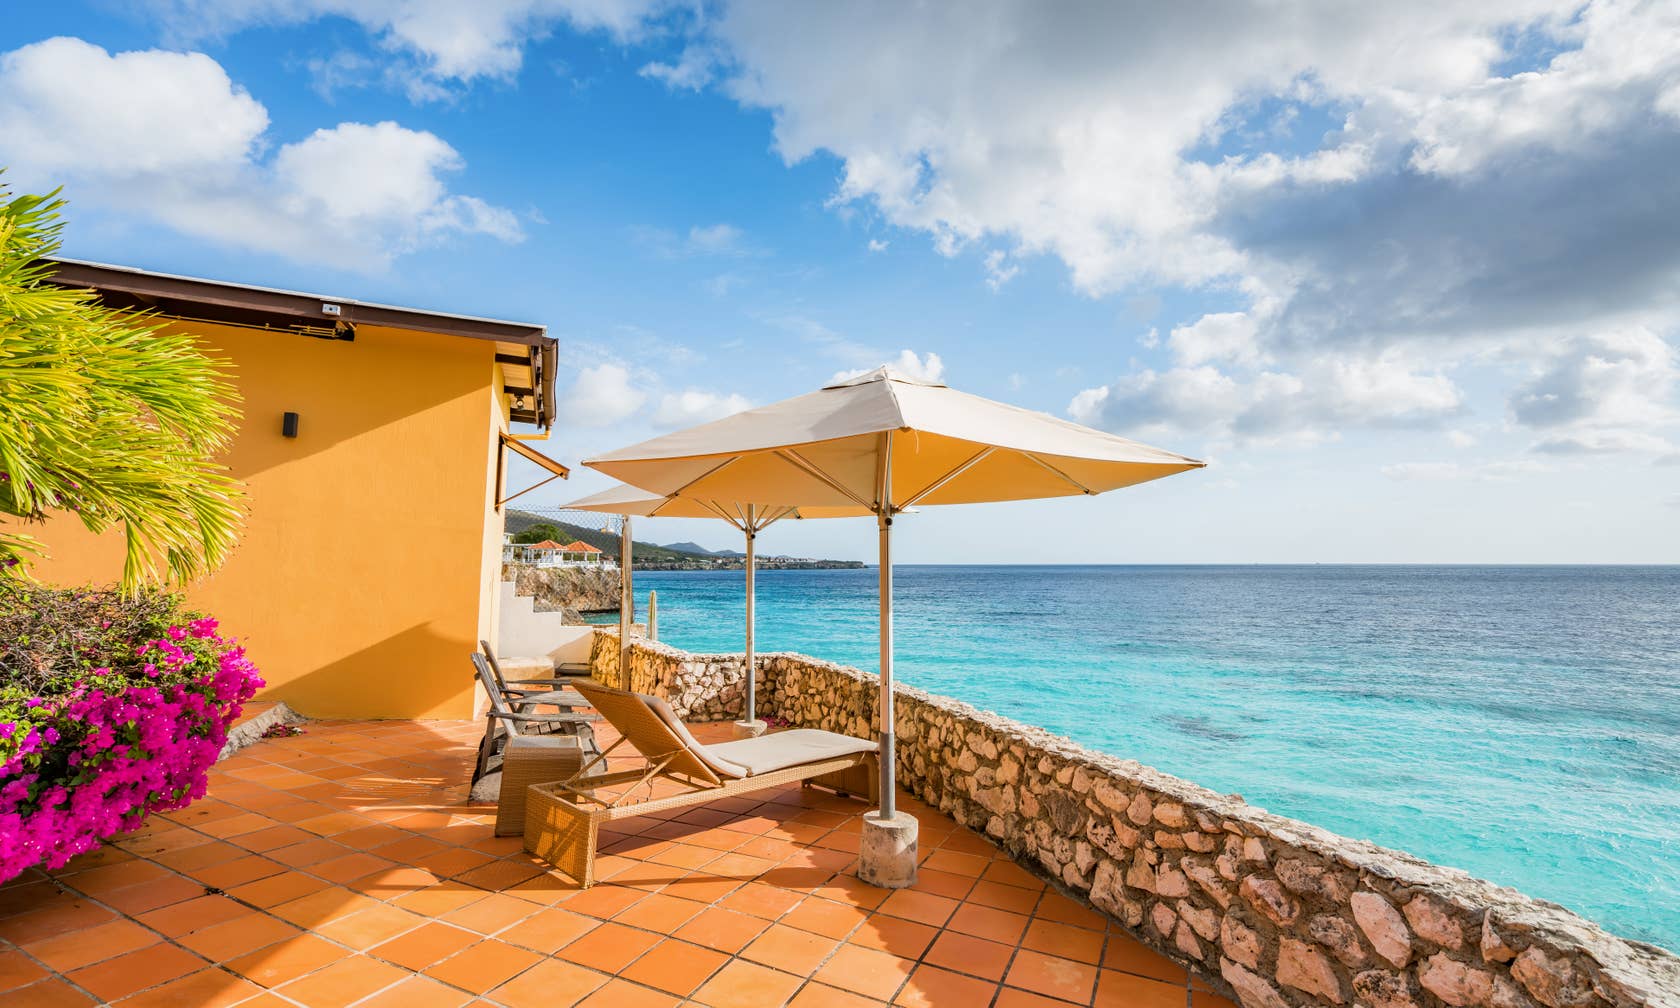 Case de vacanță în Curaçao